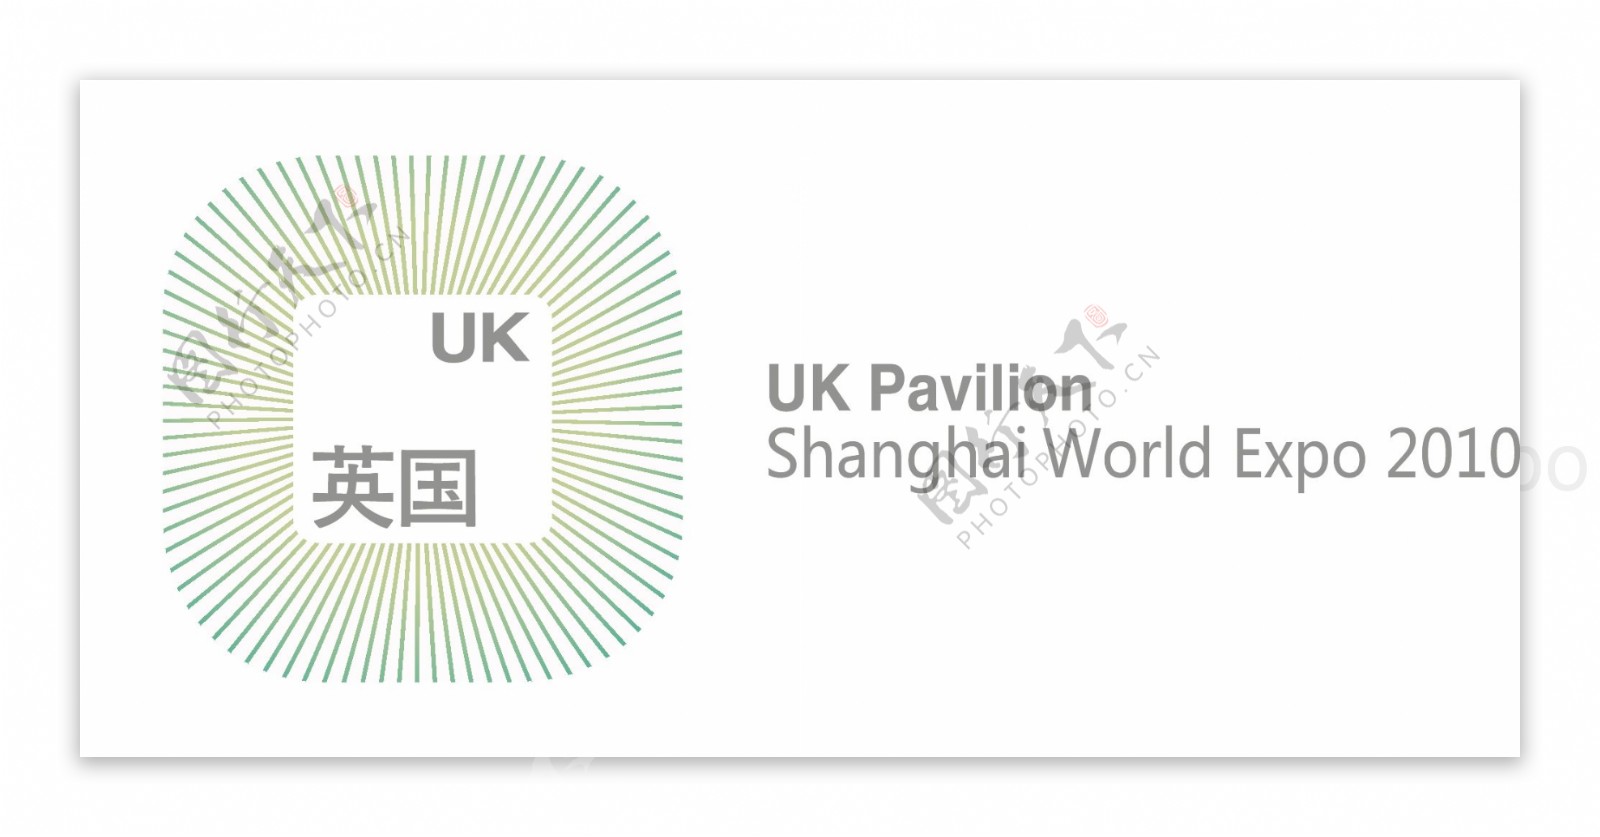 上海世博会英国城市logo图片